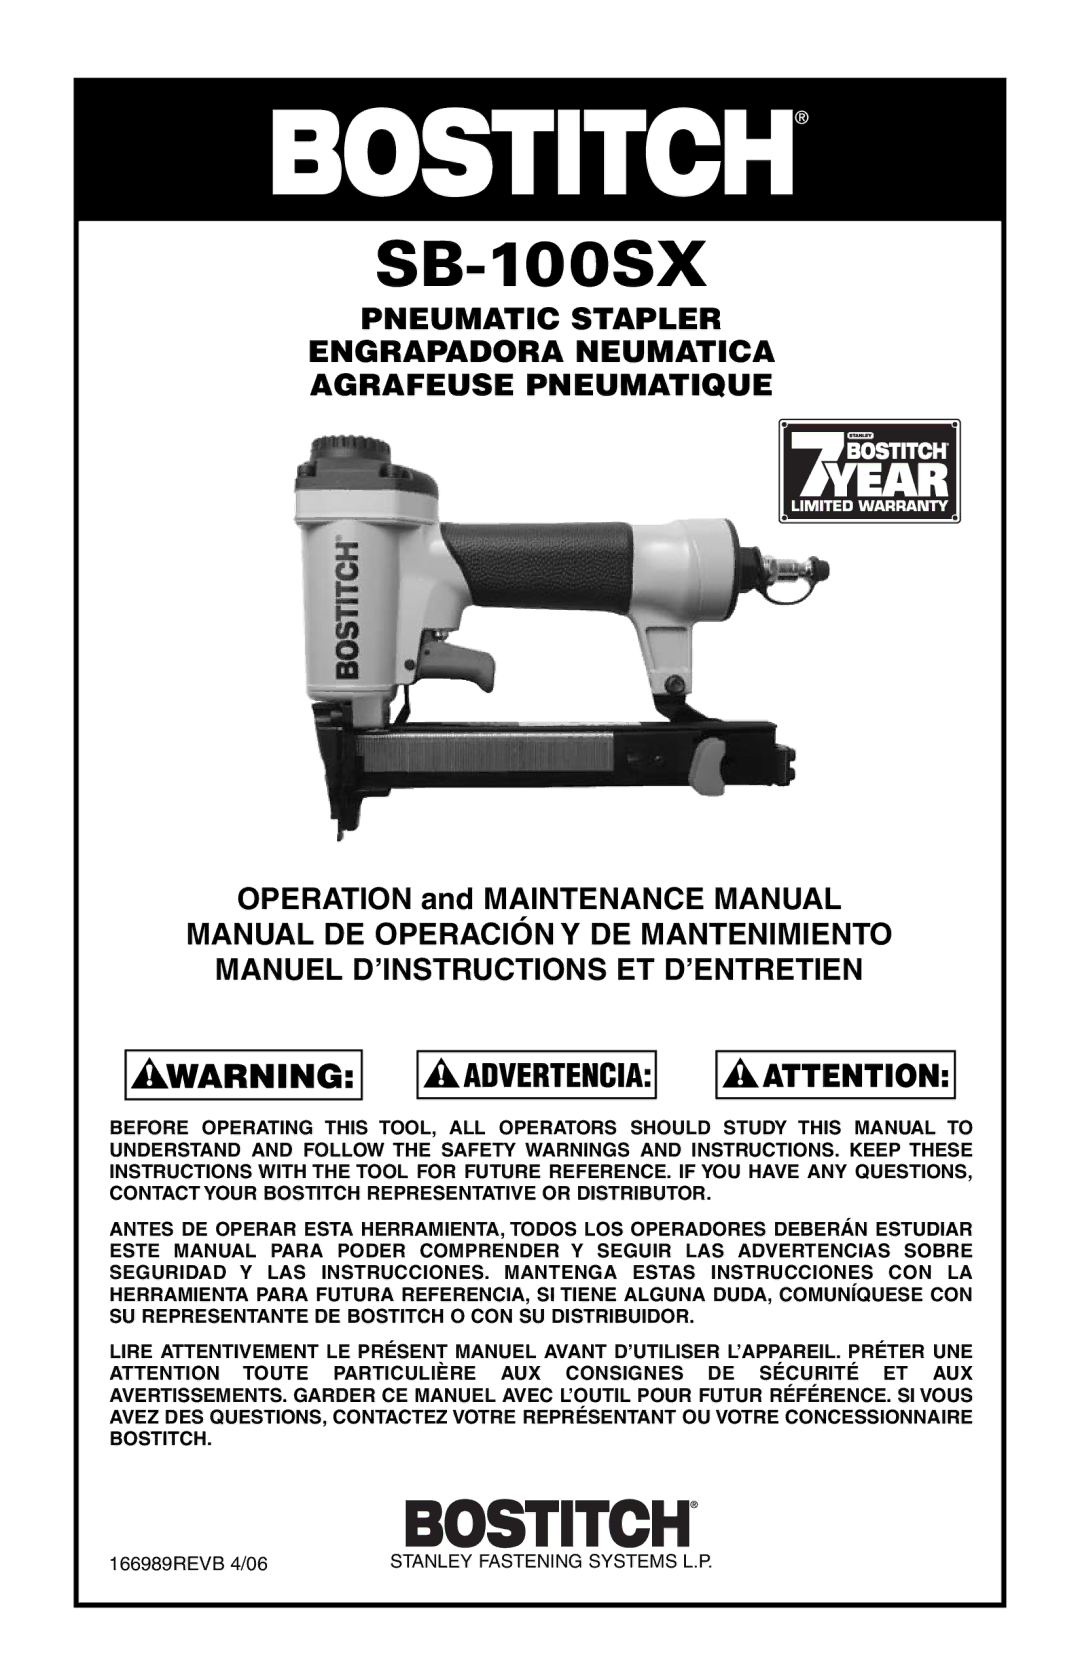 Bostitch SB-100SX manual 